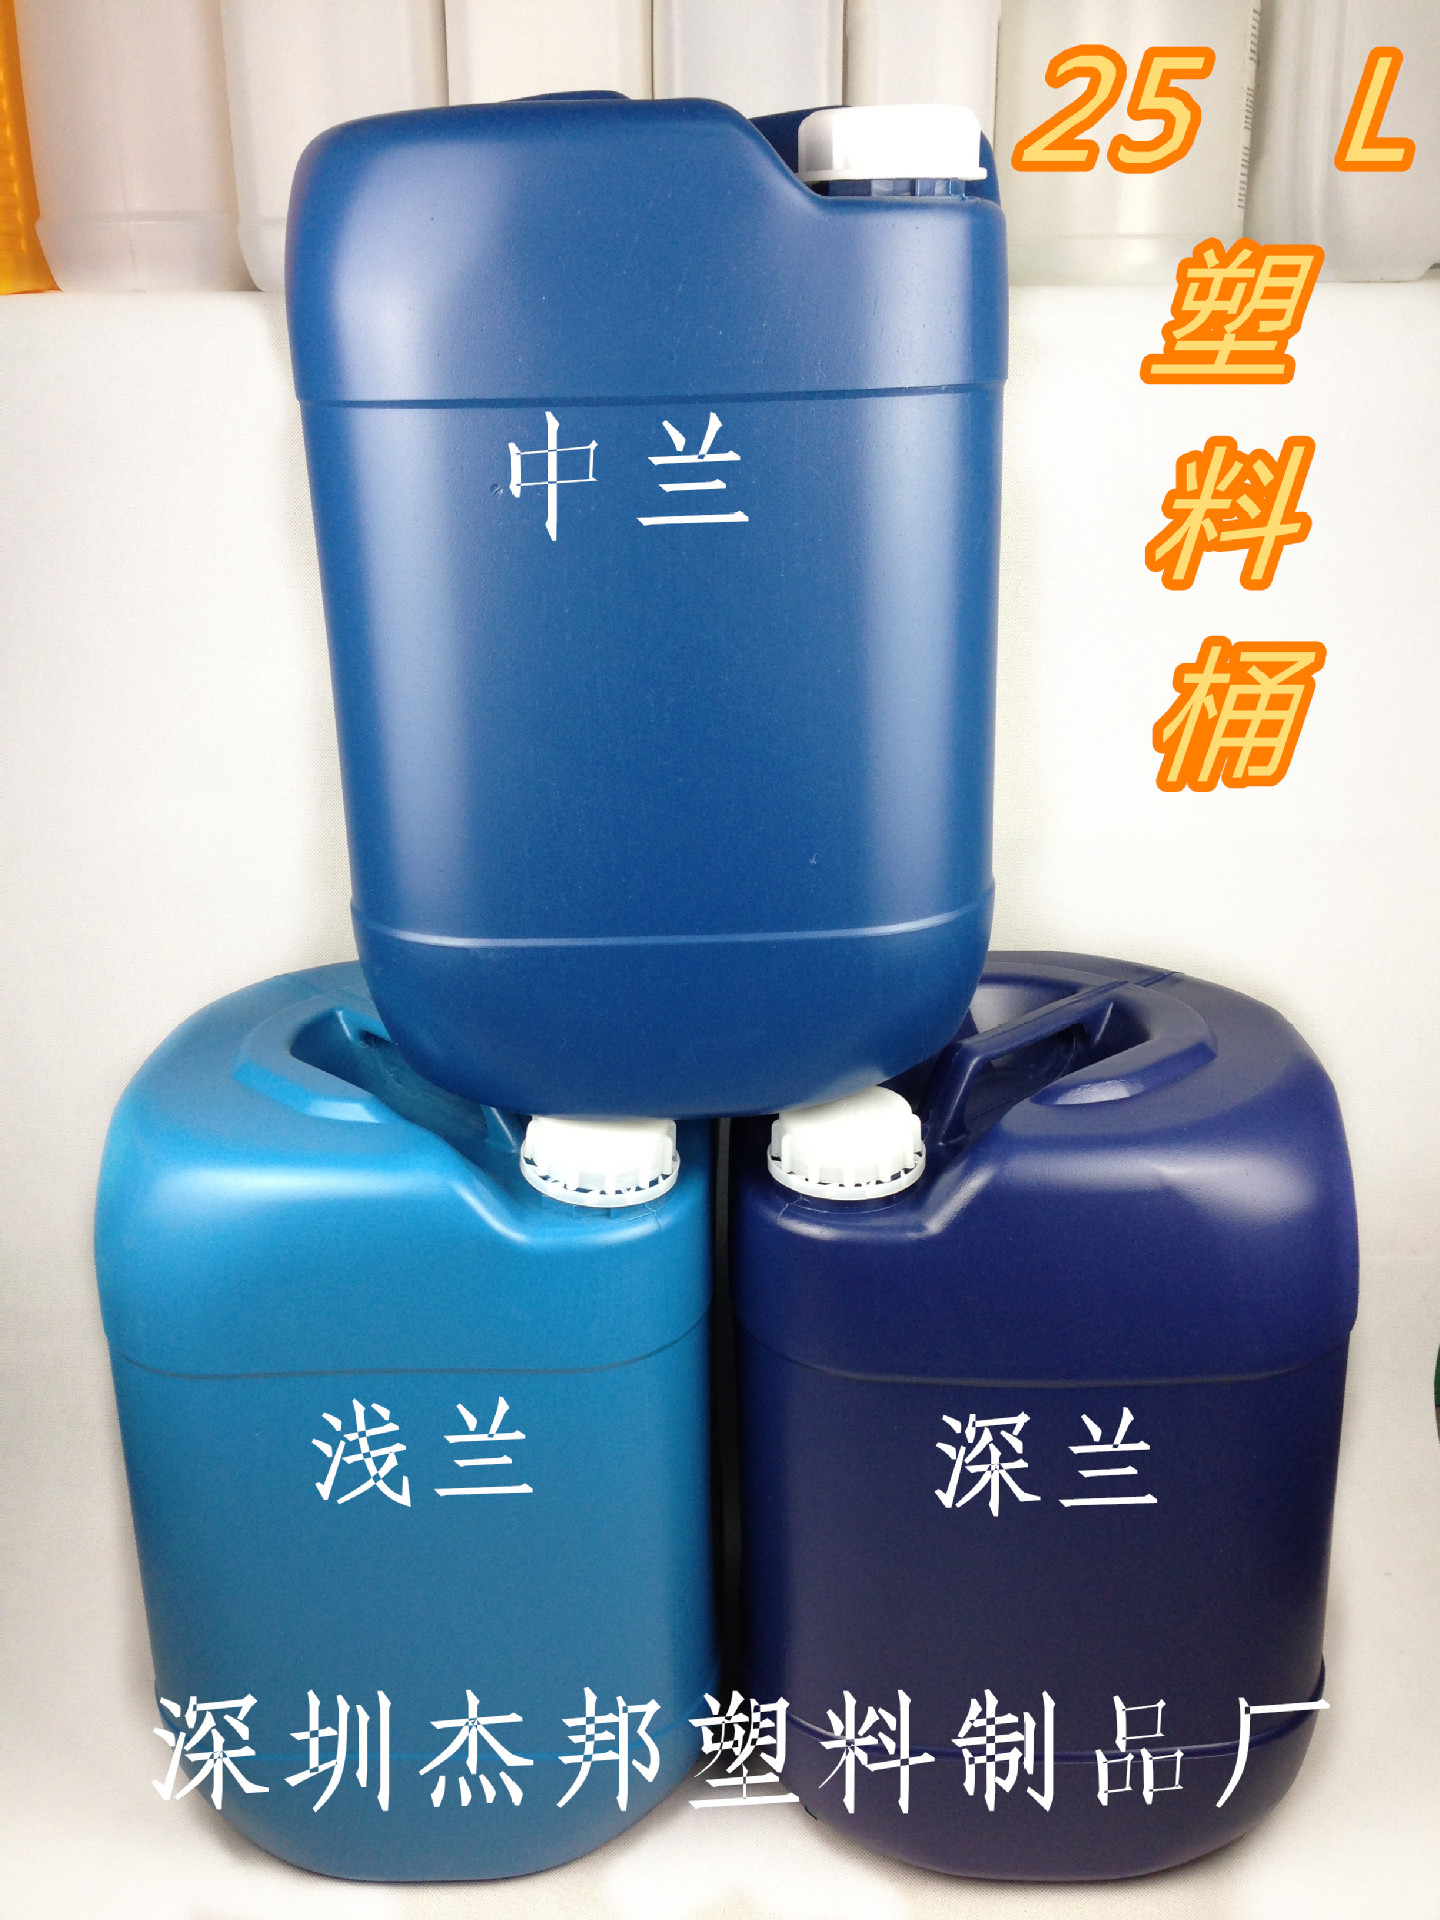 【广东化工桶厂家供应 25L塑料桶方形】价格,